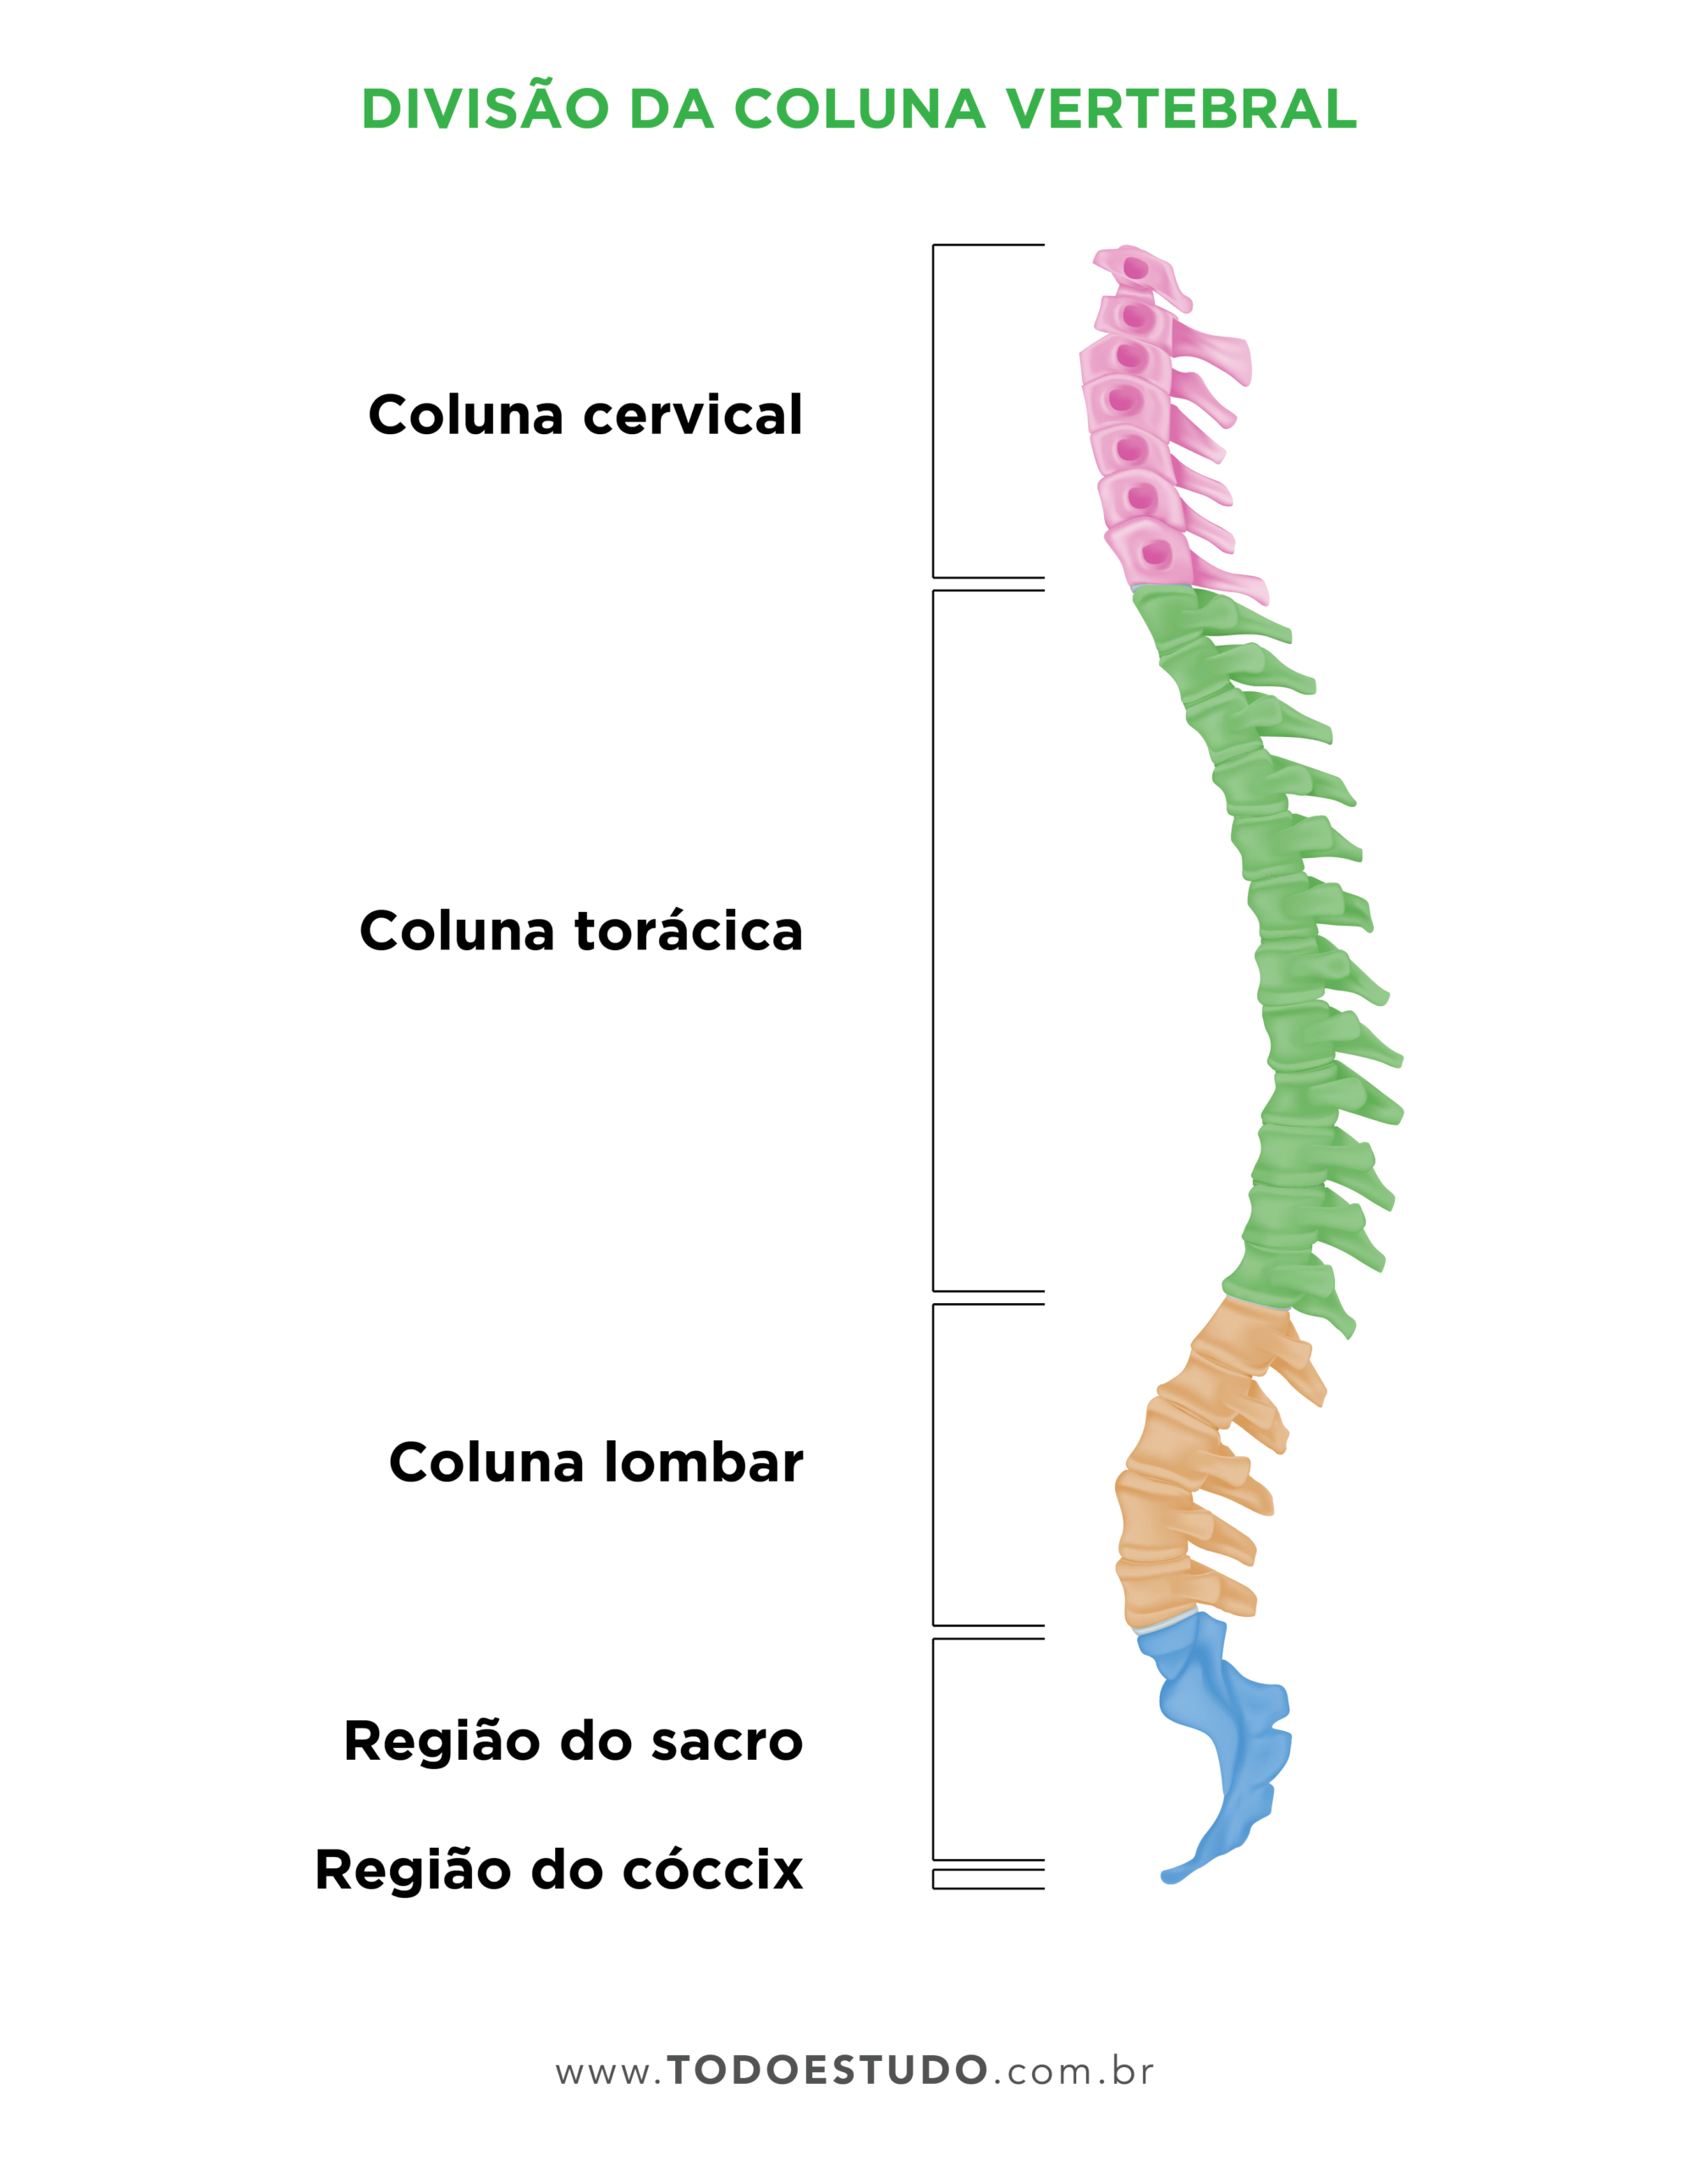 Coluna vertebral: o que é, quais são as suas funções e como é dividida